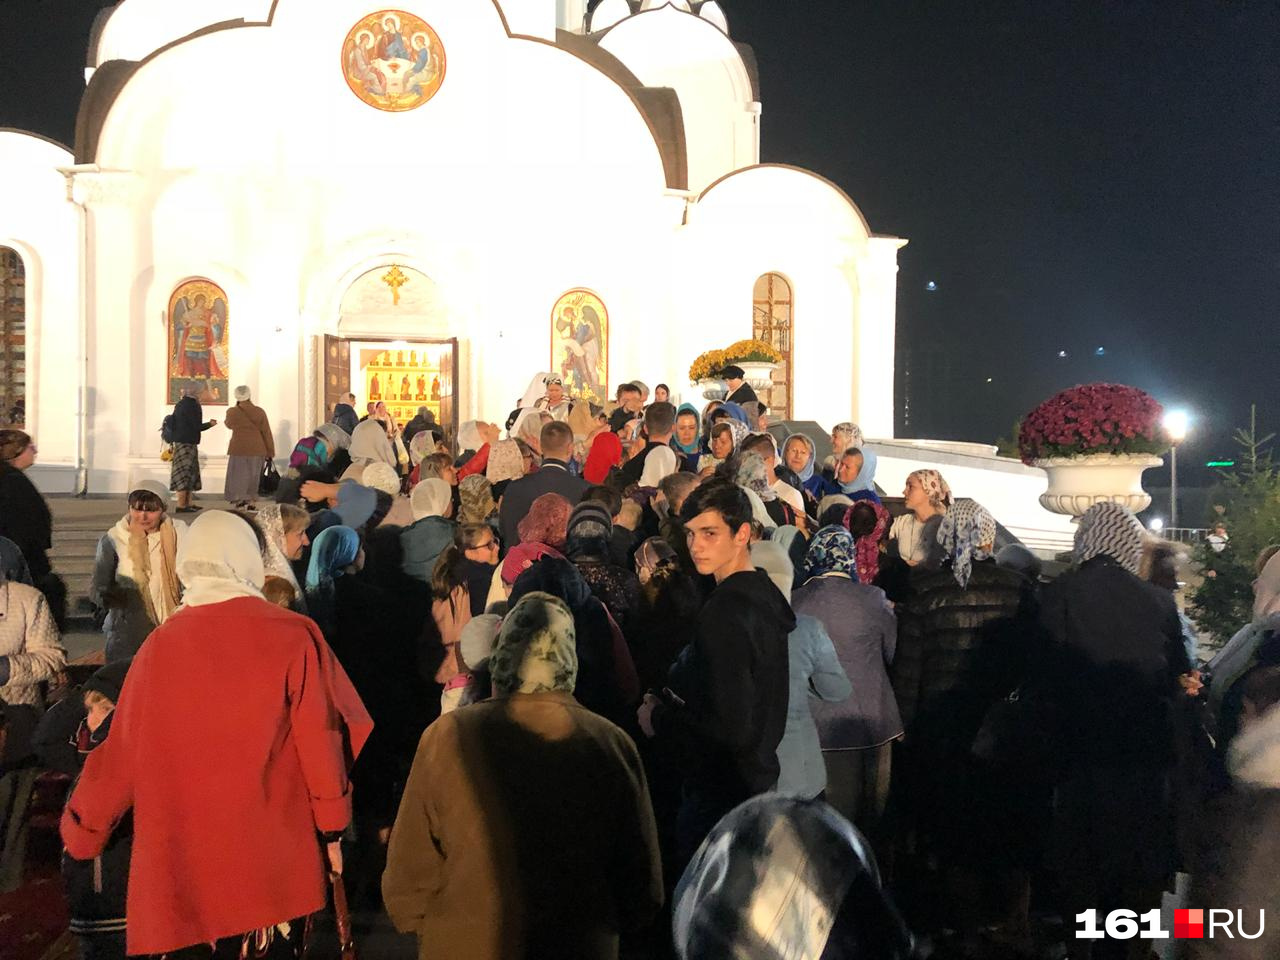 Верующие, не попавшие внутрь храма, отстояли всю службу снаружи на улице